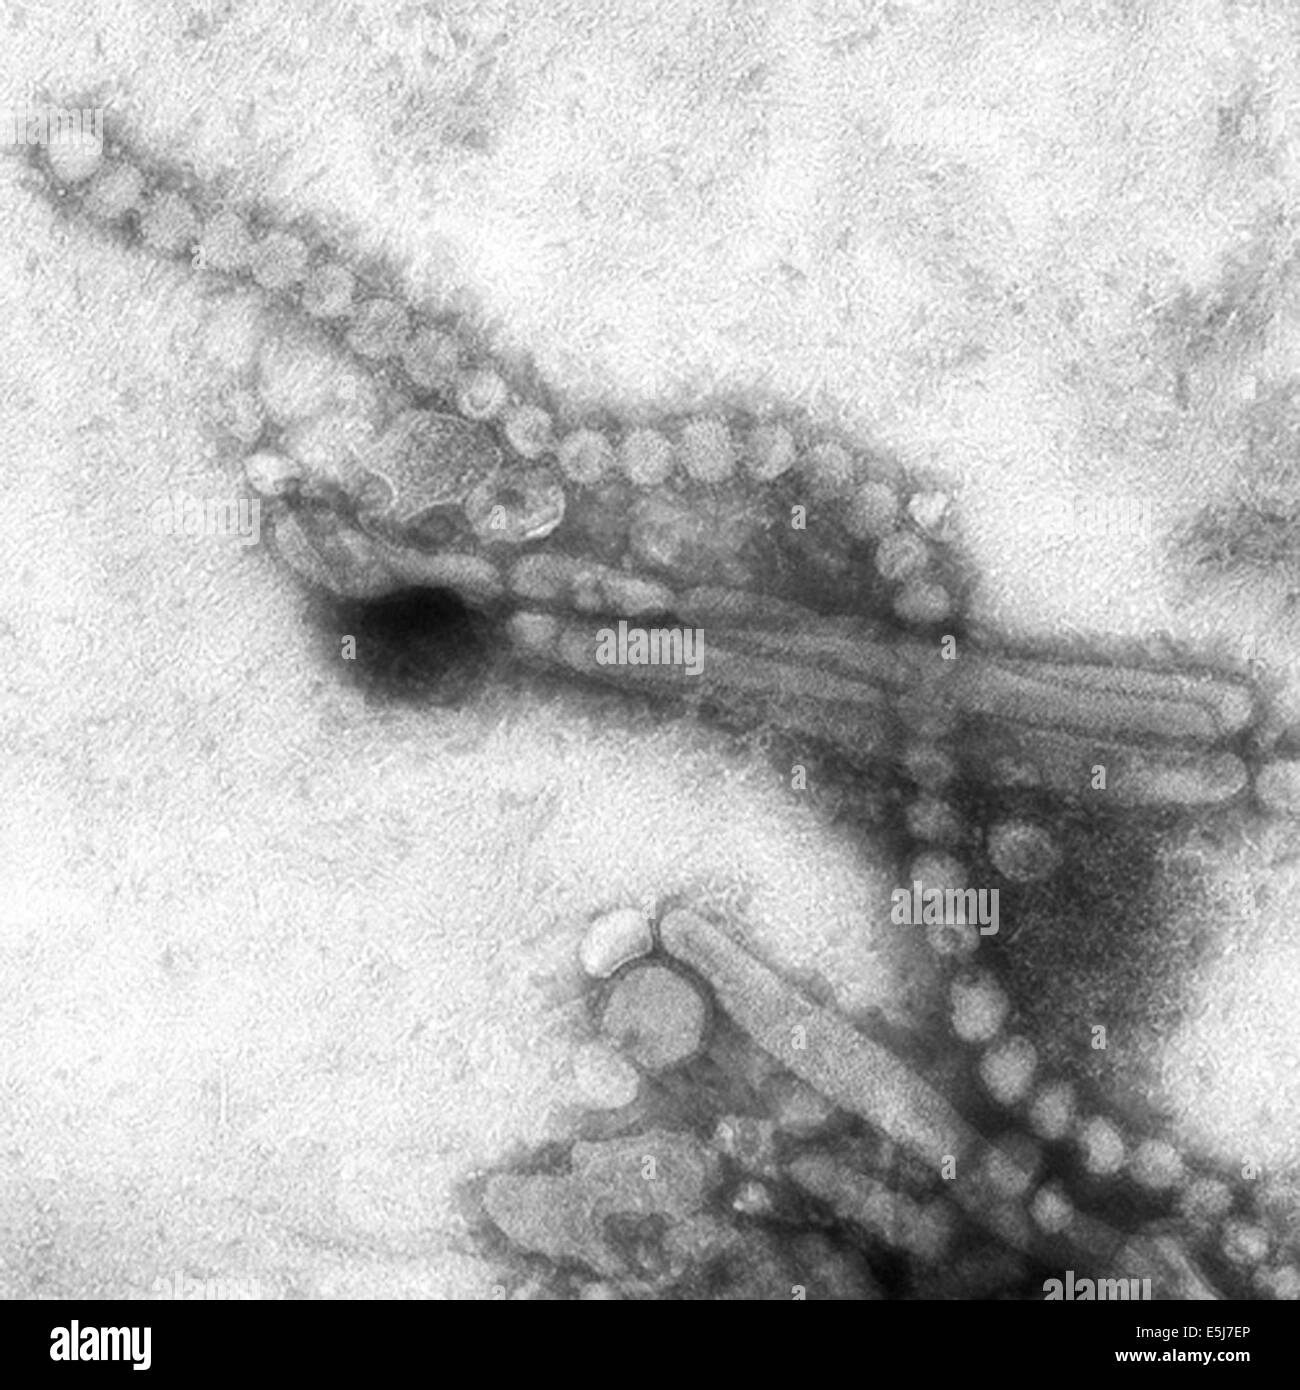 Grippe aviaire H7N9 virus comme vu à travers un microscope électronique. Les deux filaments et sphères sont observés dans cette photo des archives du Service de presse Portrait Banque D'Images